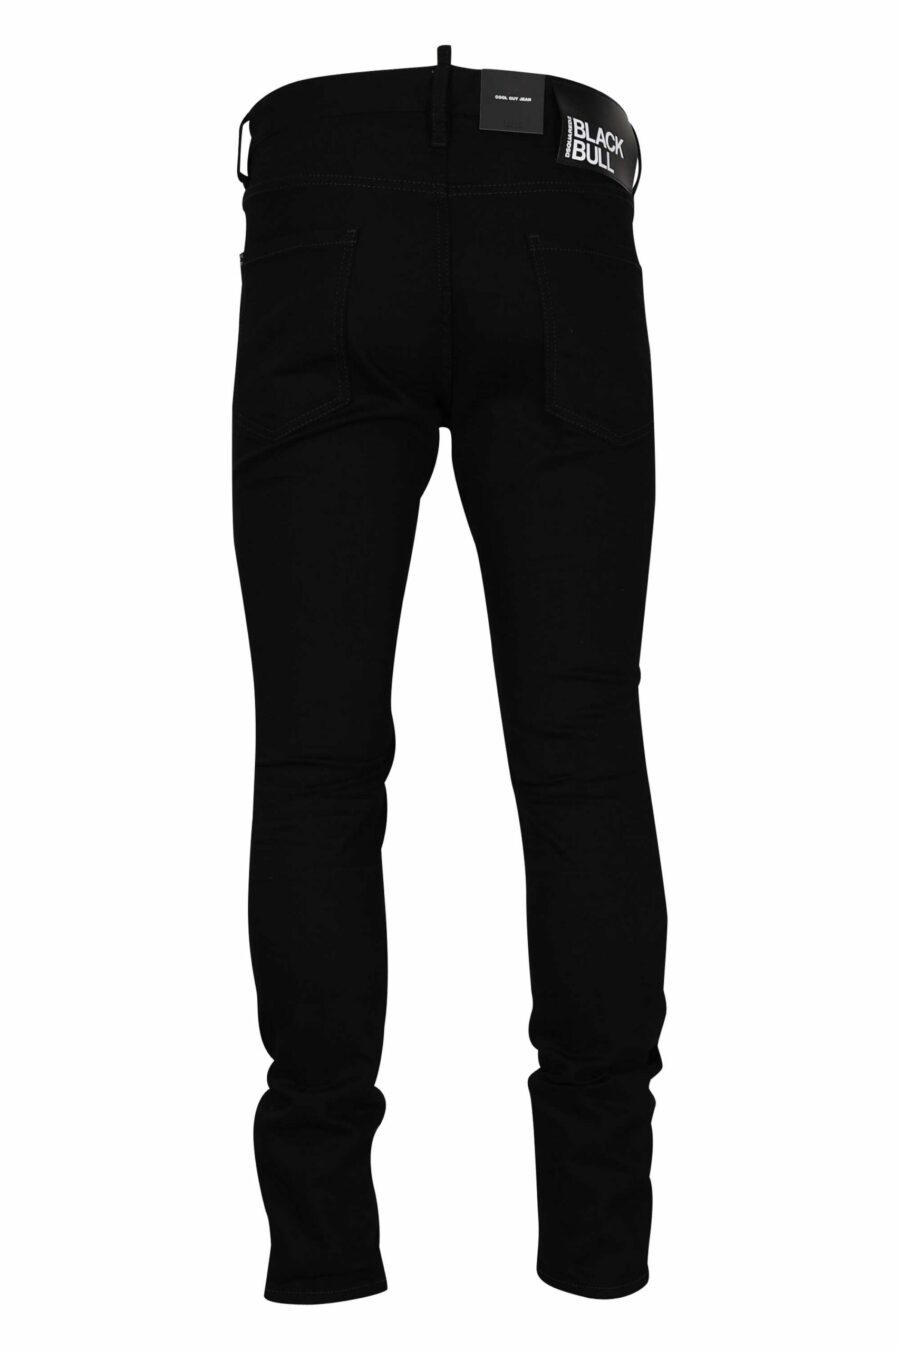 Pantalon noir "Cool guy jean" - 8054148284039 2 à l'échelle